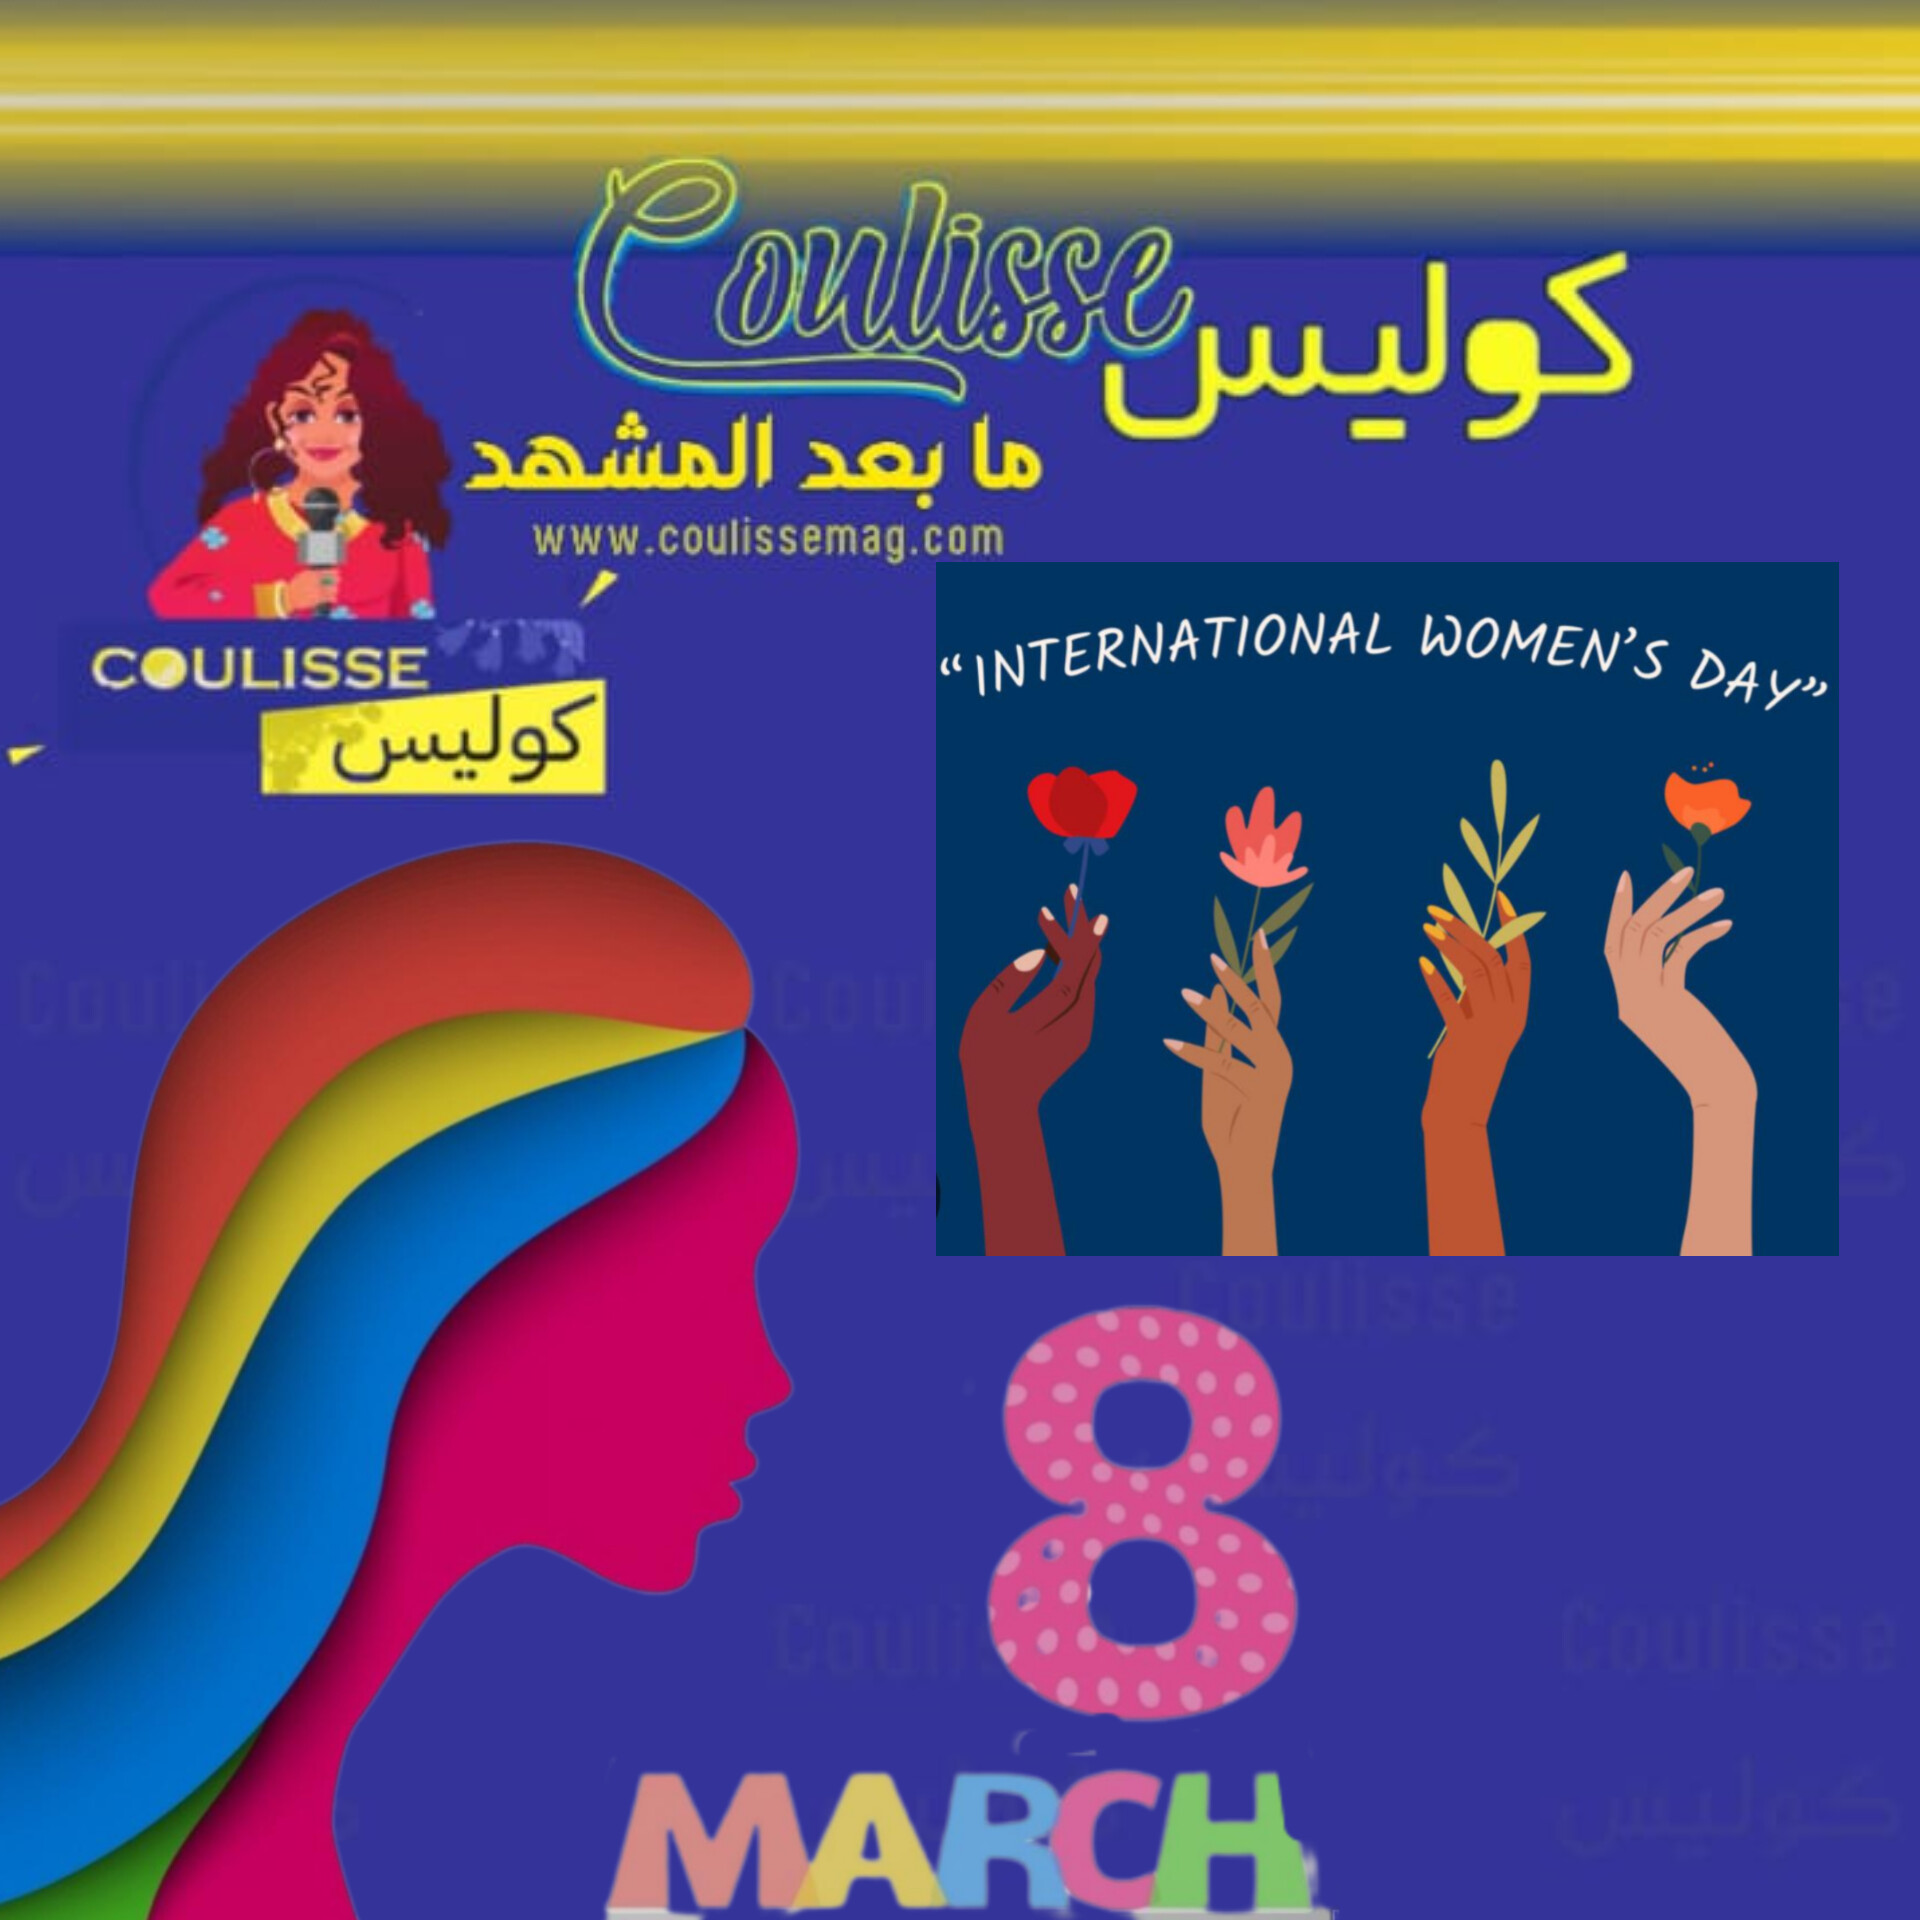 احتفالية يوم المرأة العالمي: تكريم الإنجازات النسائية وتعزيز الكفاح نحو تحقيق المساواة! – صور